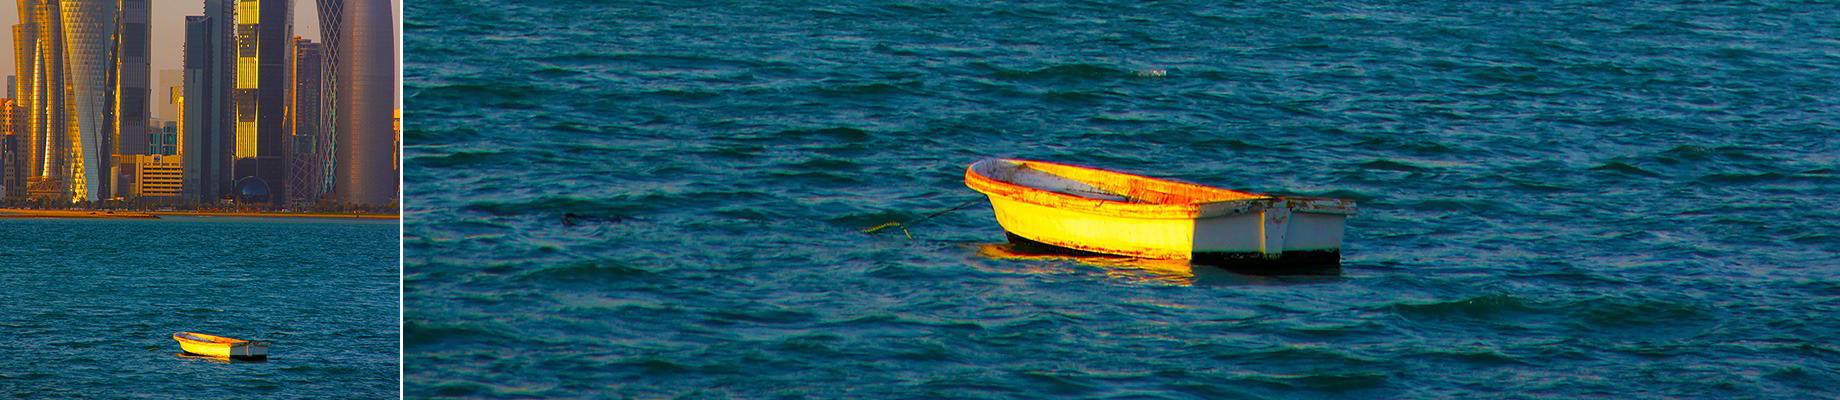 Einzelnes Boot auf dem offenen Meer